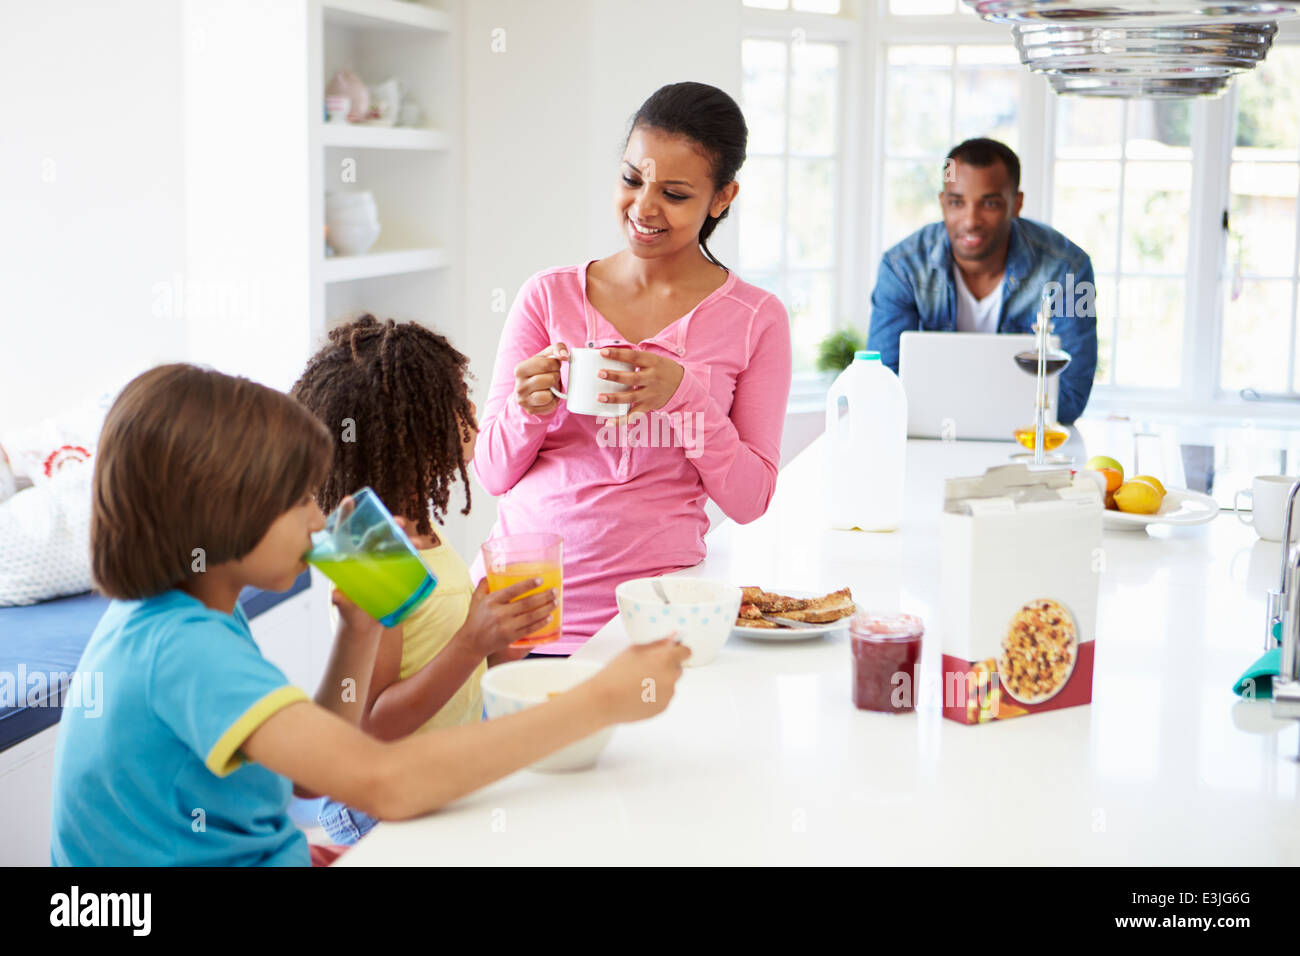 Позавтракав мама и папа отправились за покупками. Семья завтракает хлопьями. Счастливая семья за завтраком. Семья завтракает фото. Картинки завтрака красивые с семьей и детьми.